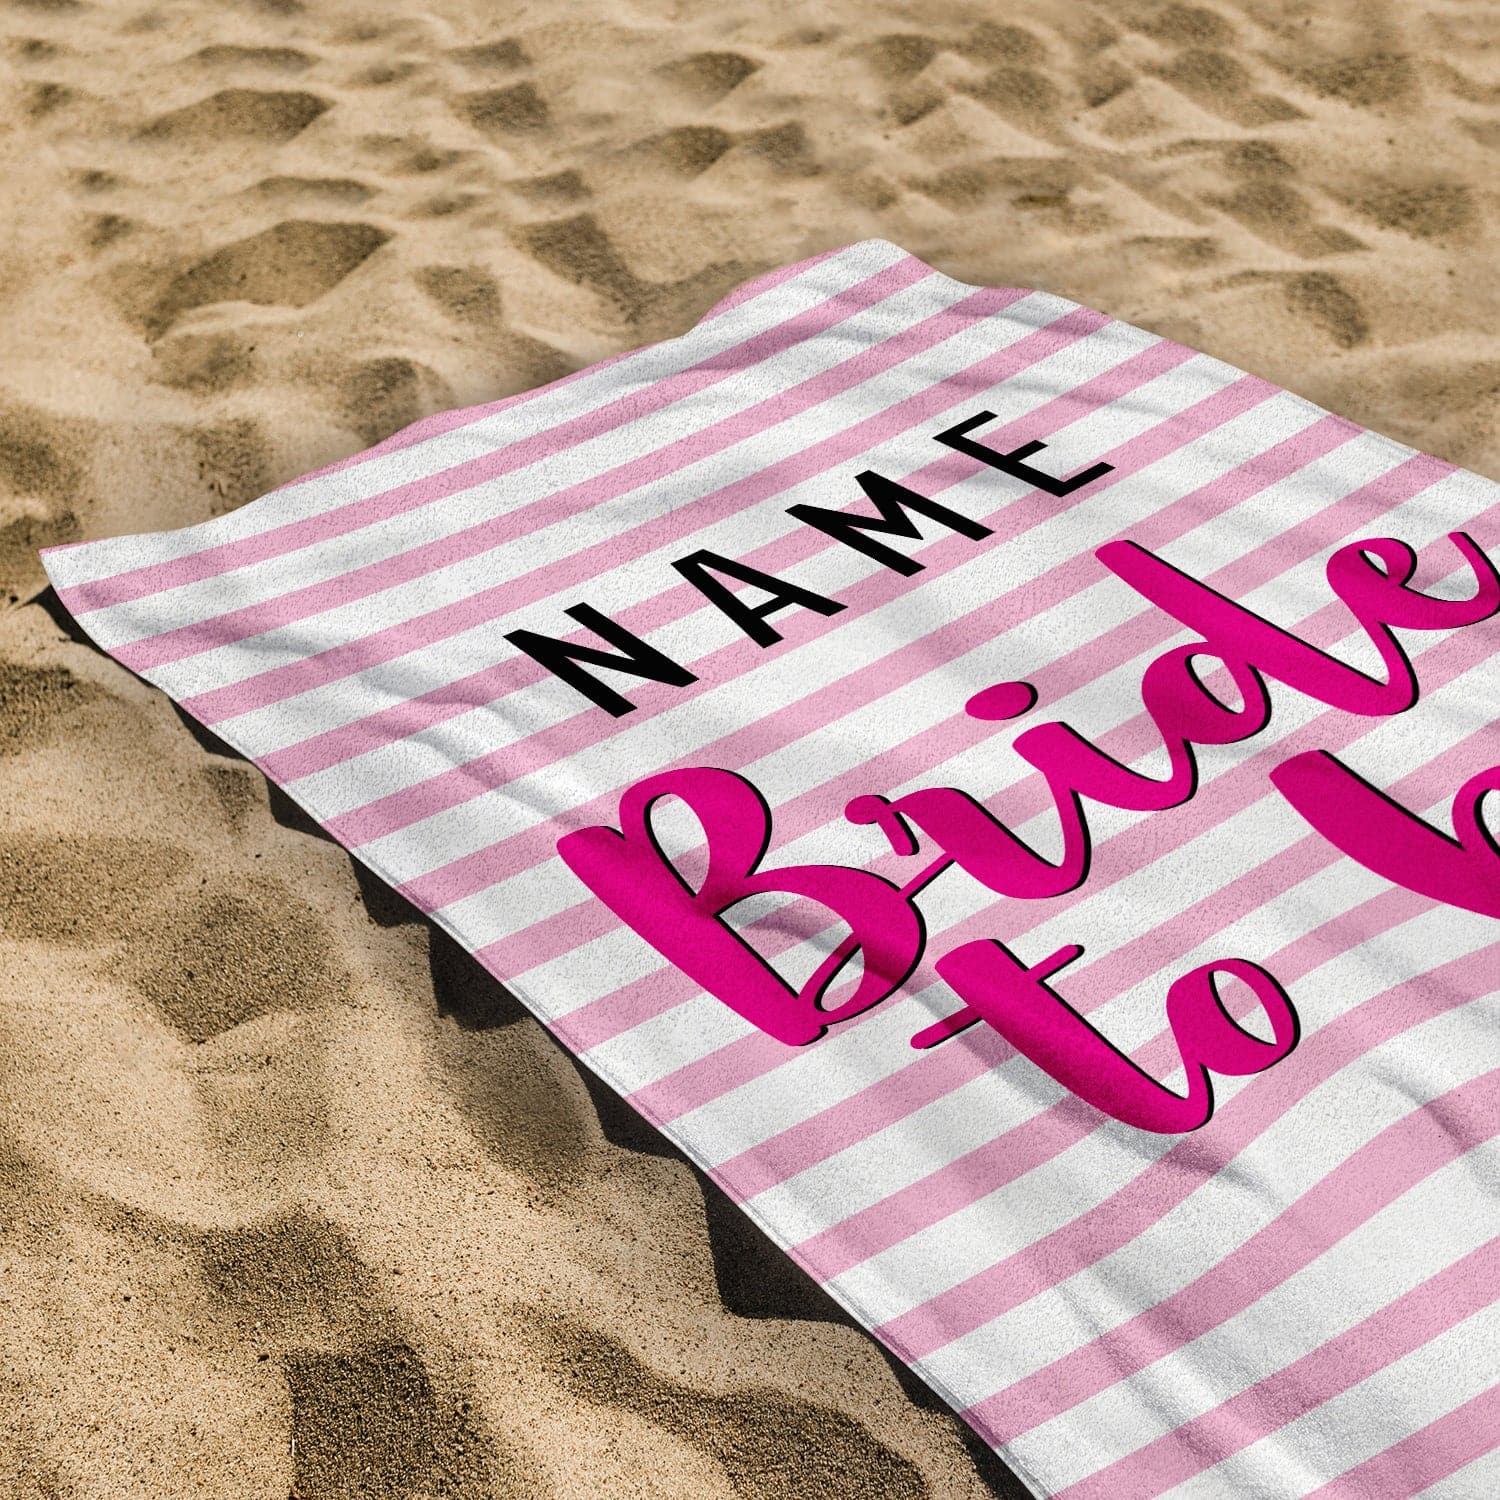 Personalised Beach Towel - Bride To Be - Pink Stripe